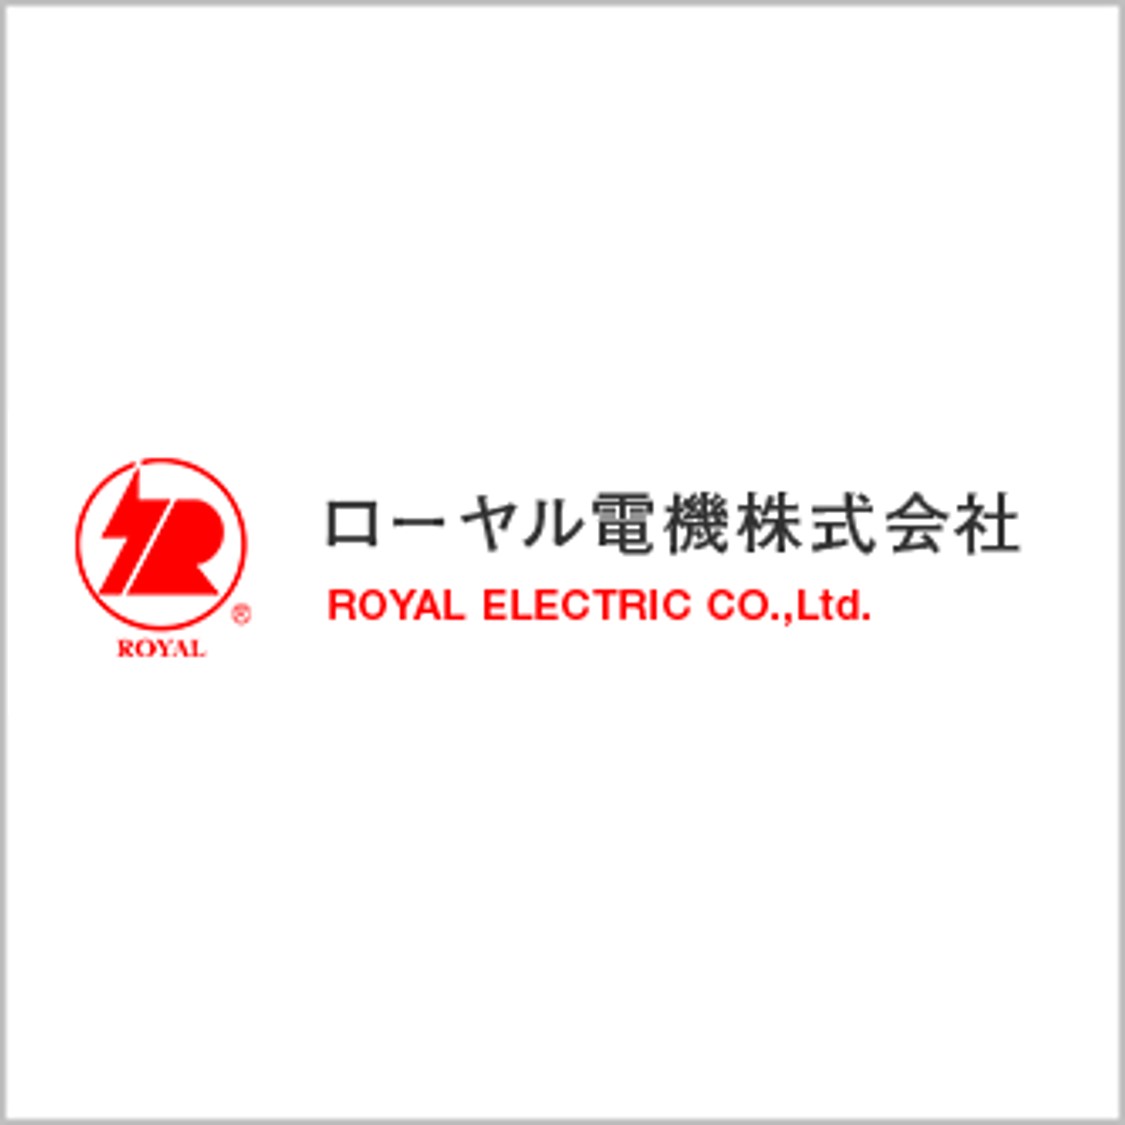 ローヤル電機株式会社